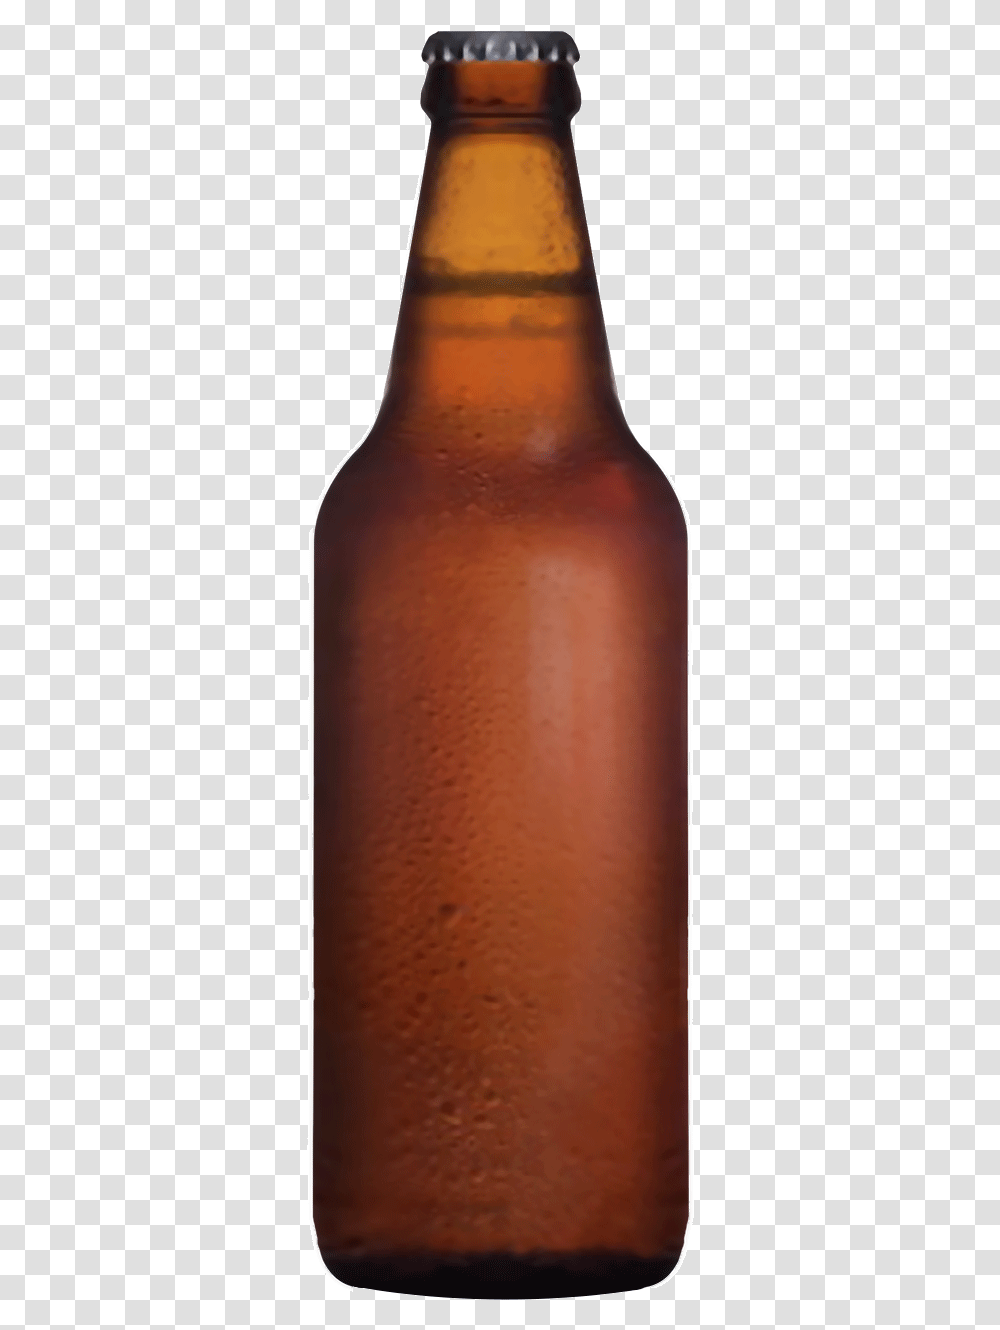 Glass Bottle, Beer, Alcohol, Beverage, Drink Transparent Png